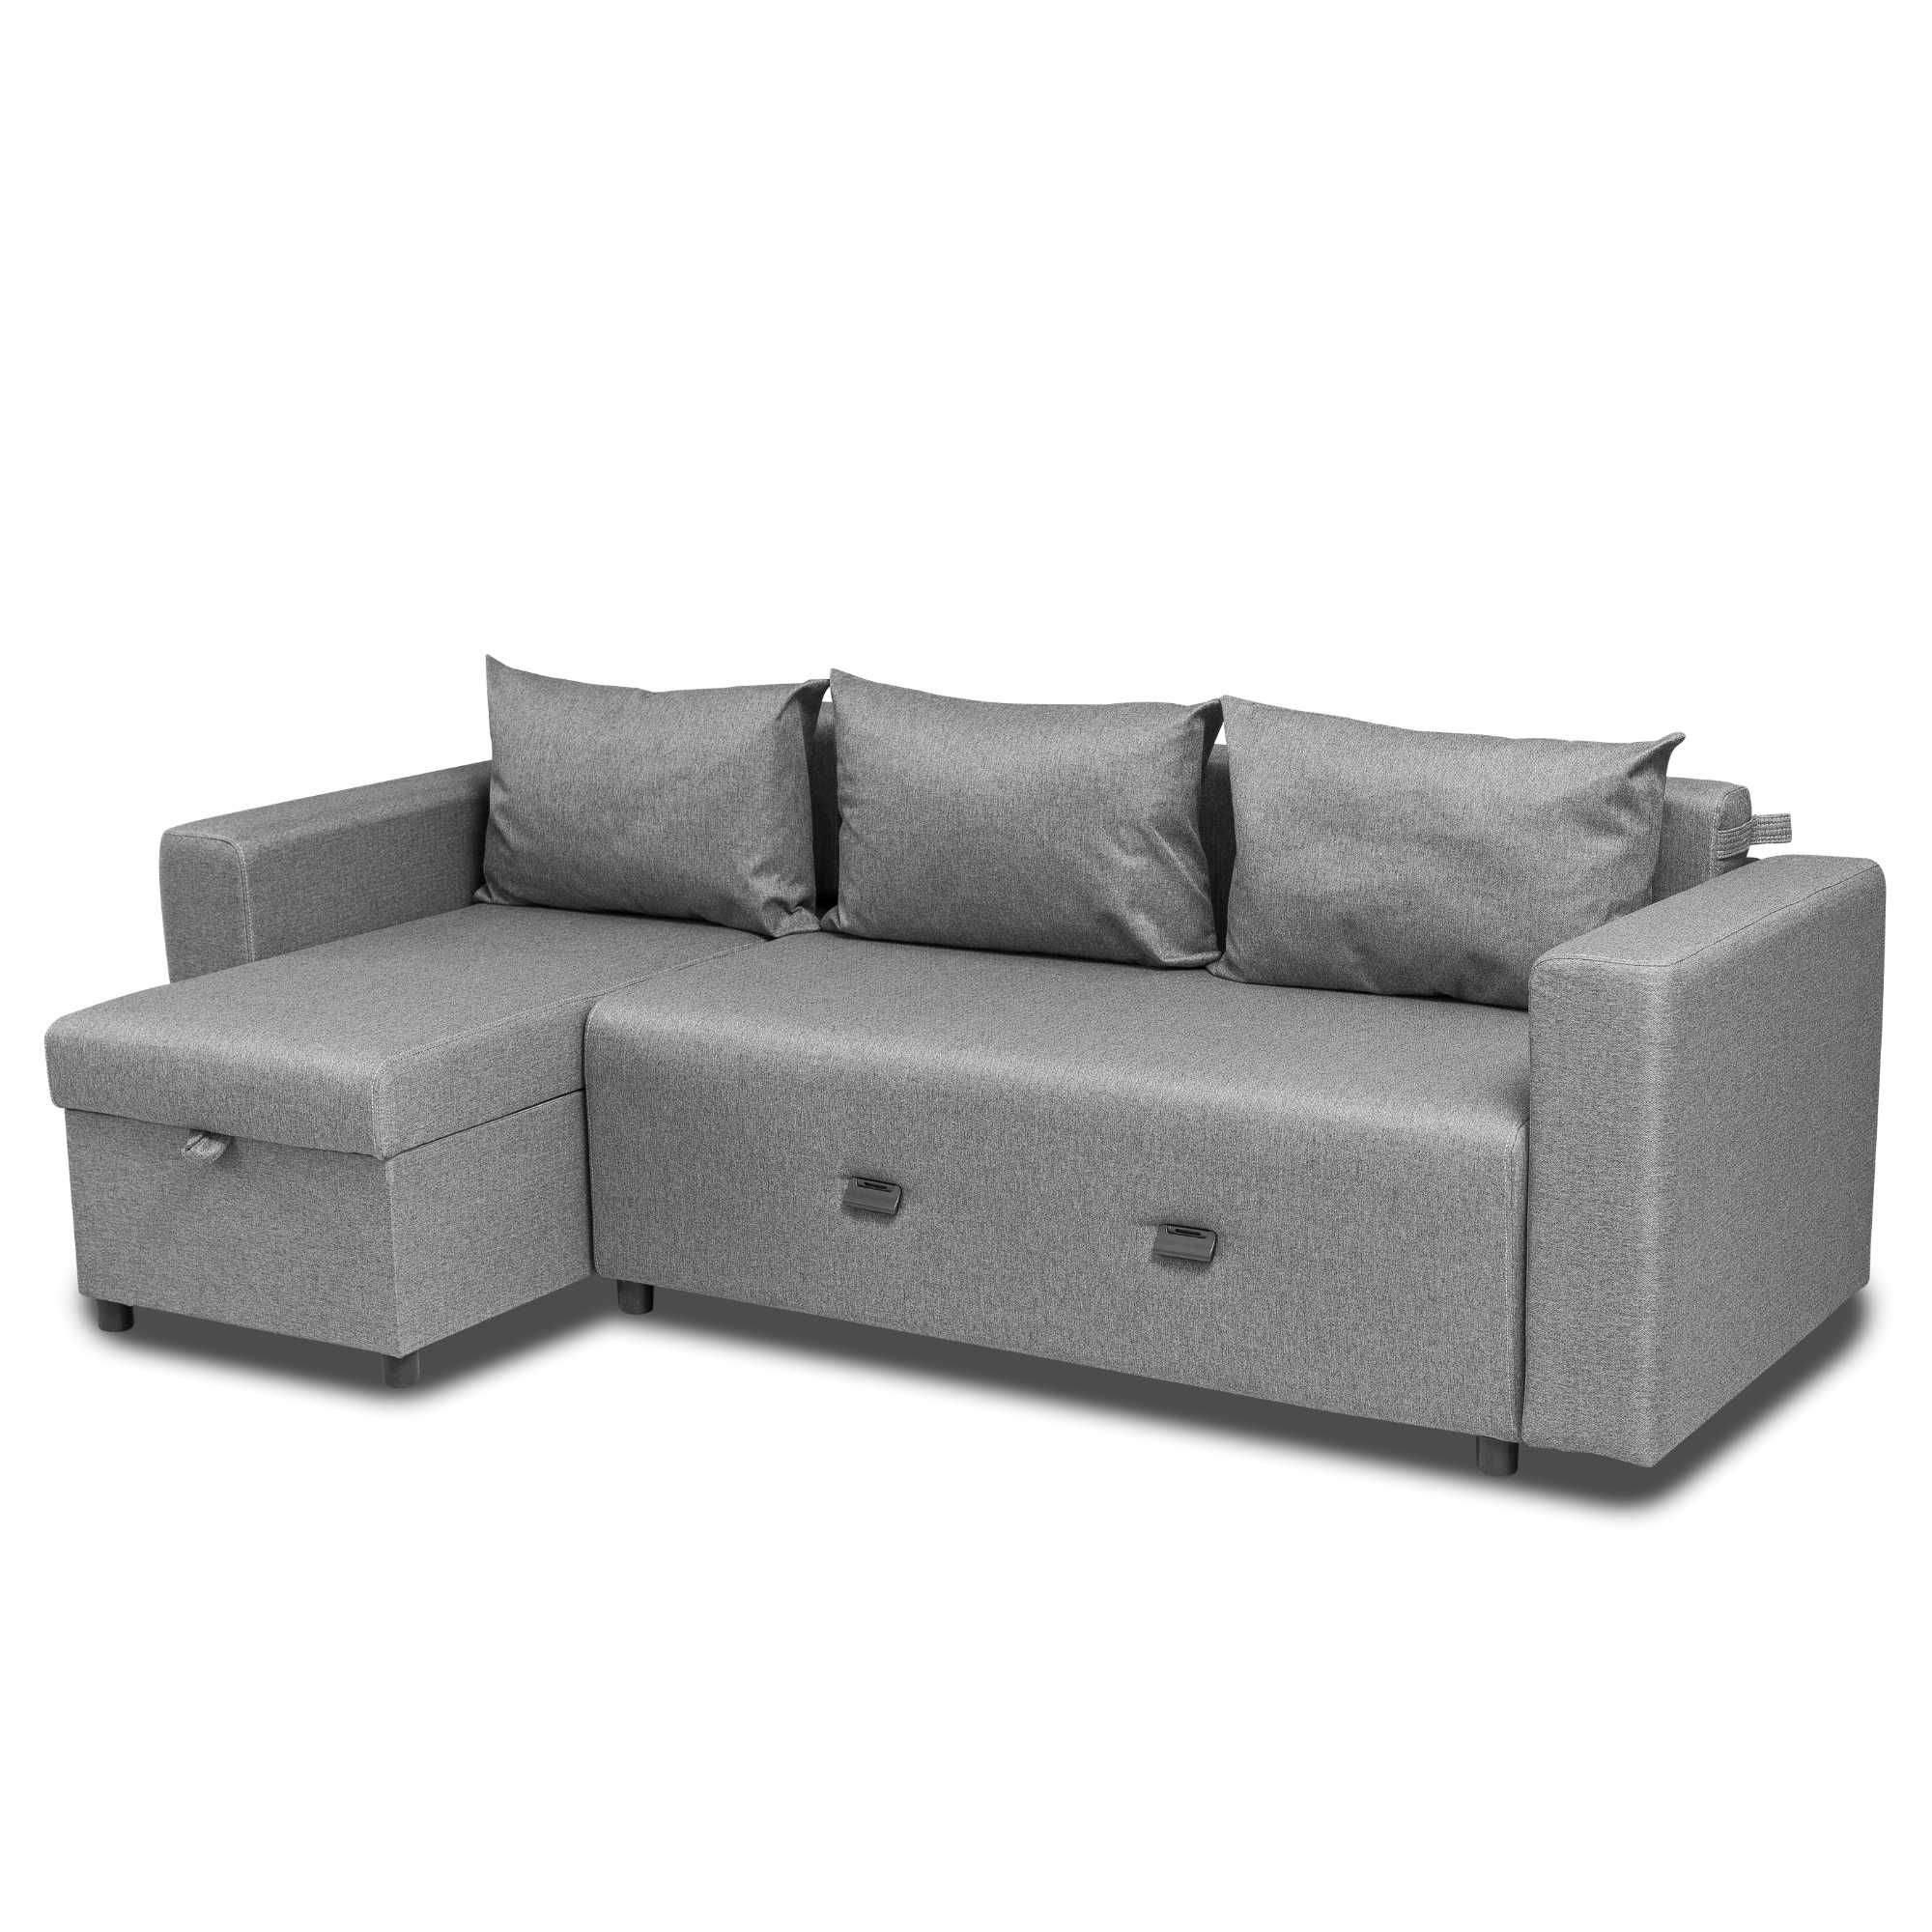 РАСПРОДАЖА! Новый диван угловой "СИТИ 3" серый от магазина АЗИЯ СКЛАД